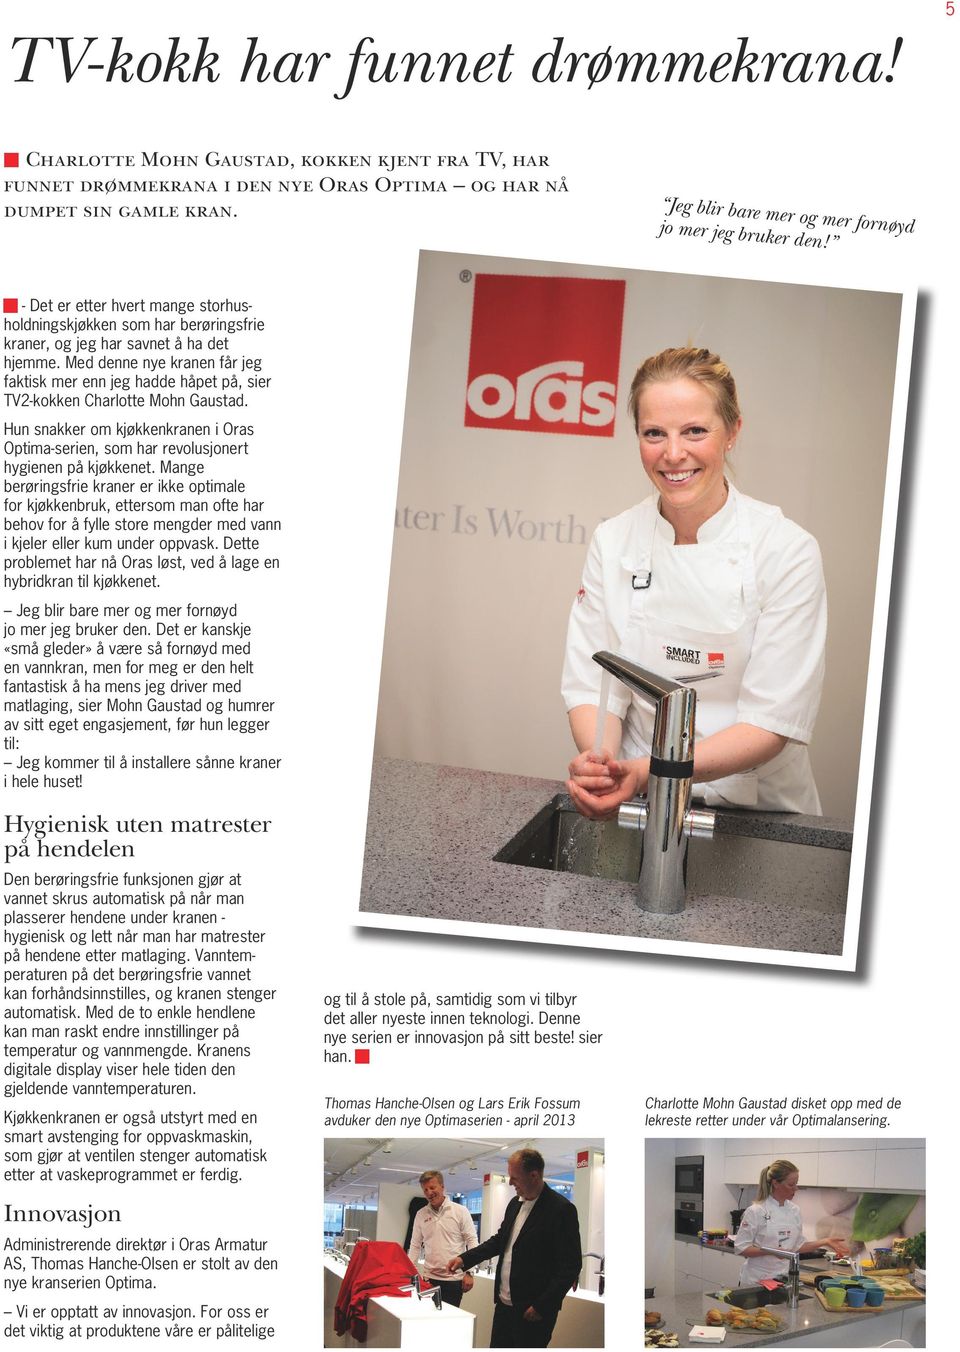 Med denne nye kranen får jeg faktisk mer enn jeg hadde håpet på, sier TV2-kokken Charlotte Mohn Gaustad. Hun snakker om kjøkkenkranen i Oras Optima-serien, som har revolusjonert hygienen på kjøkkenet.